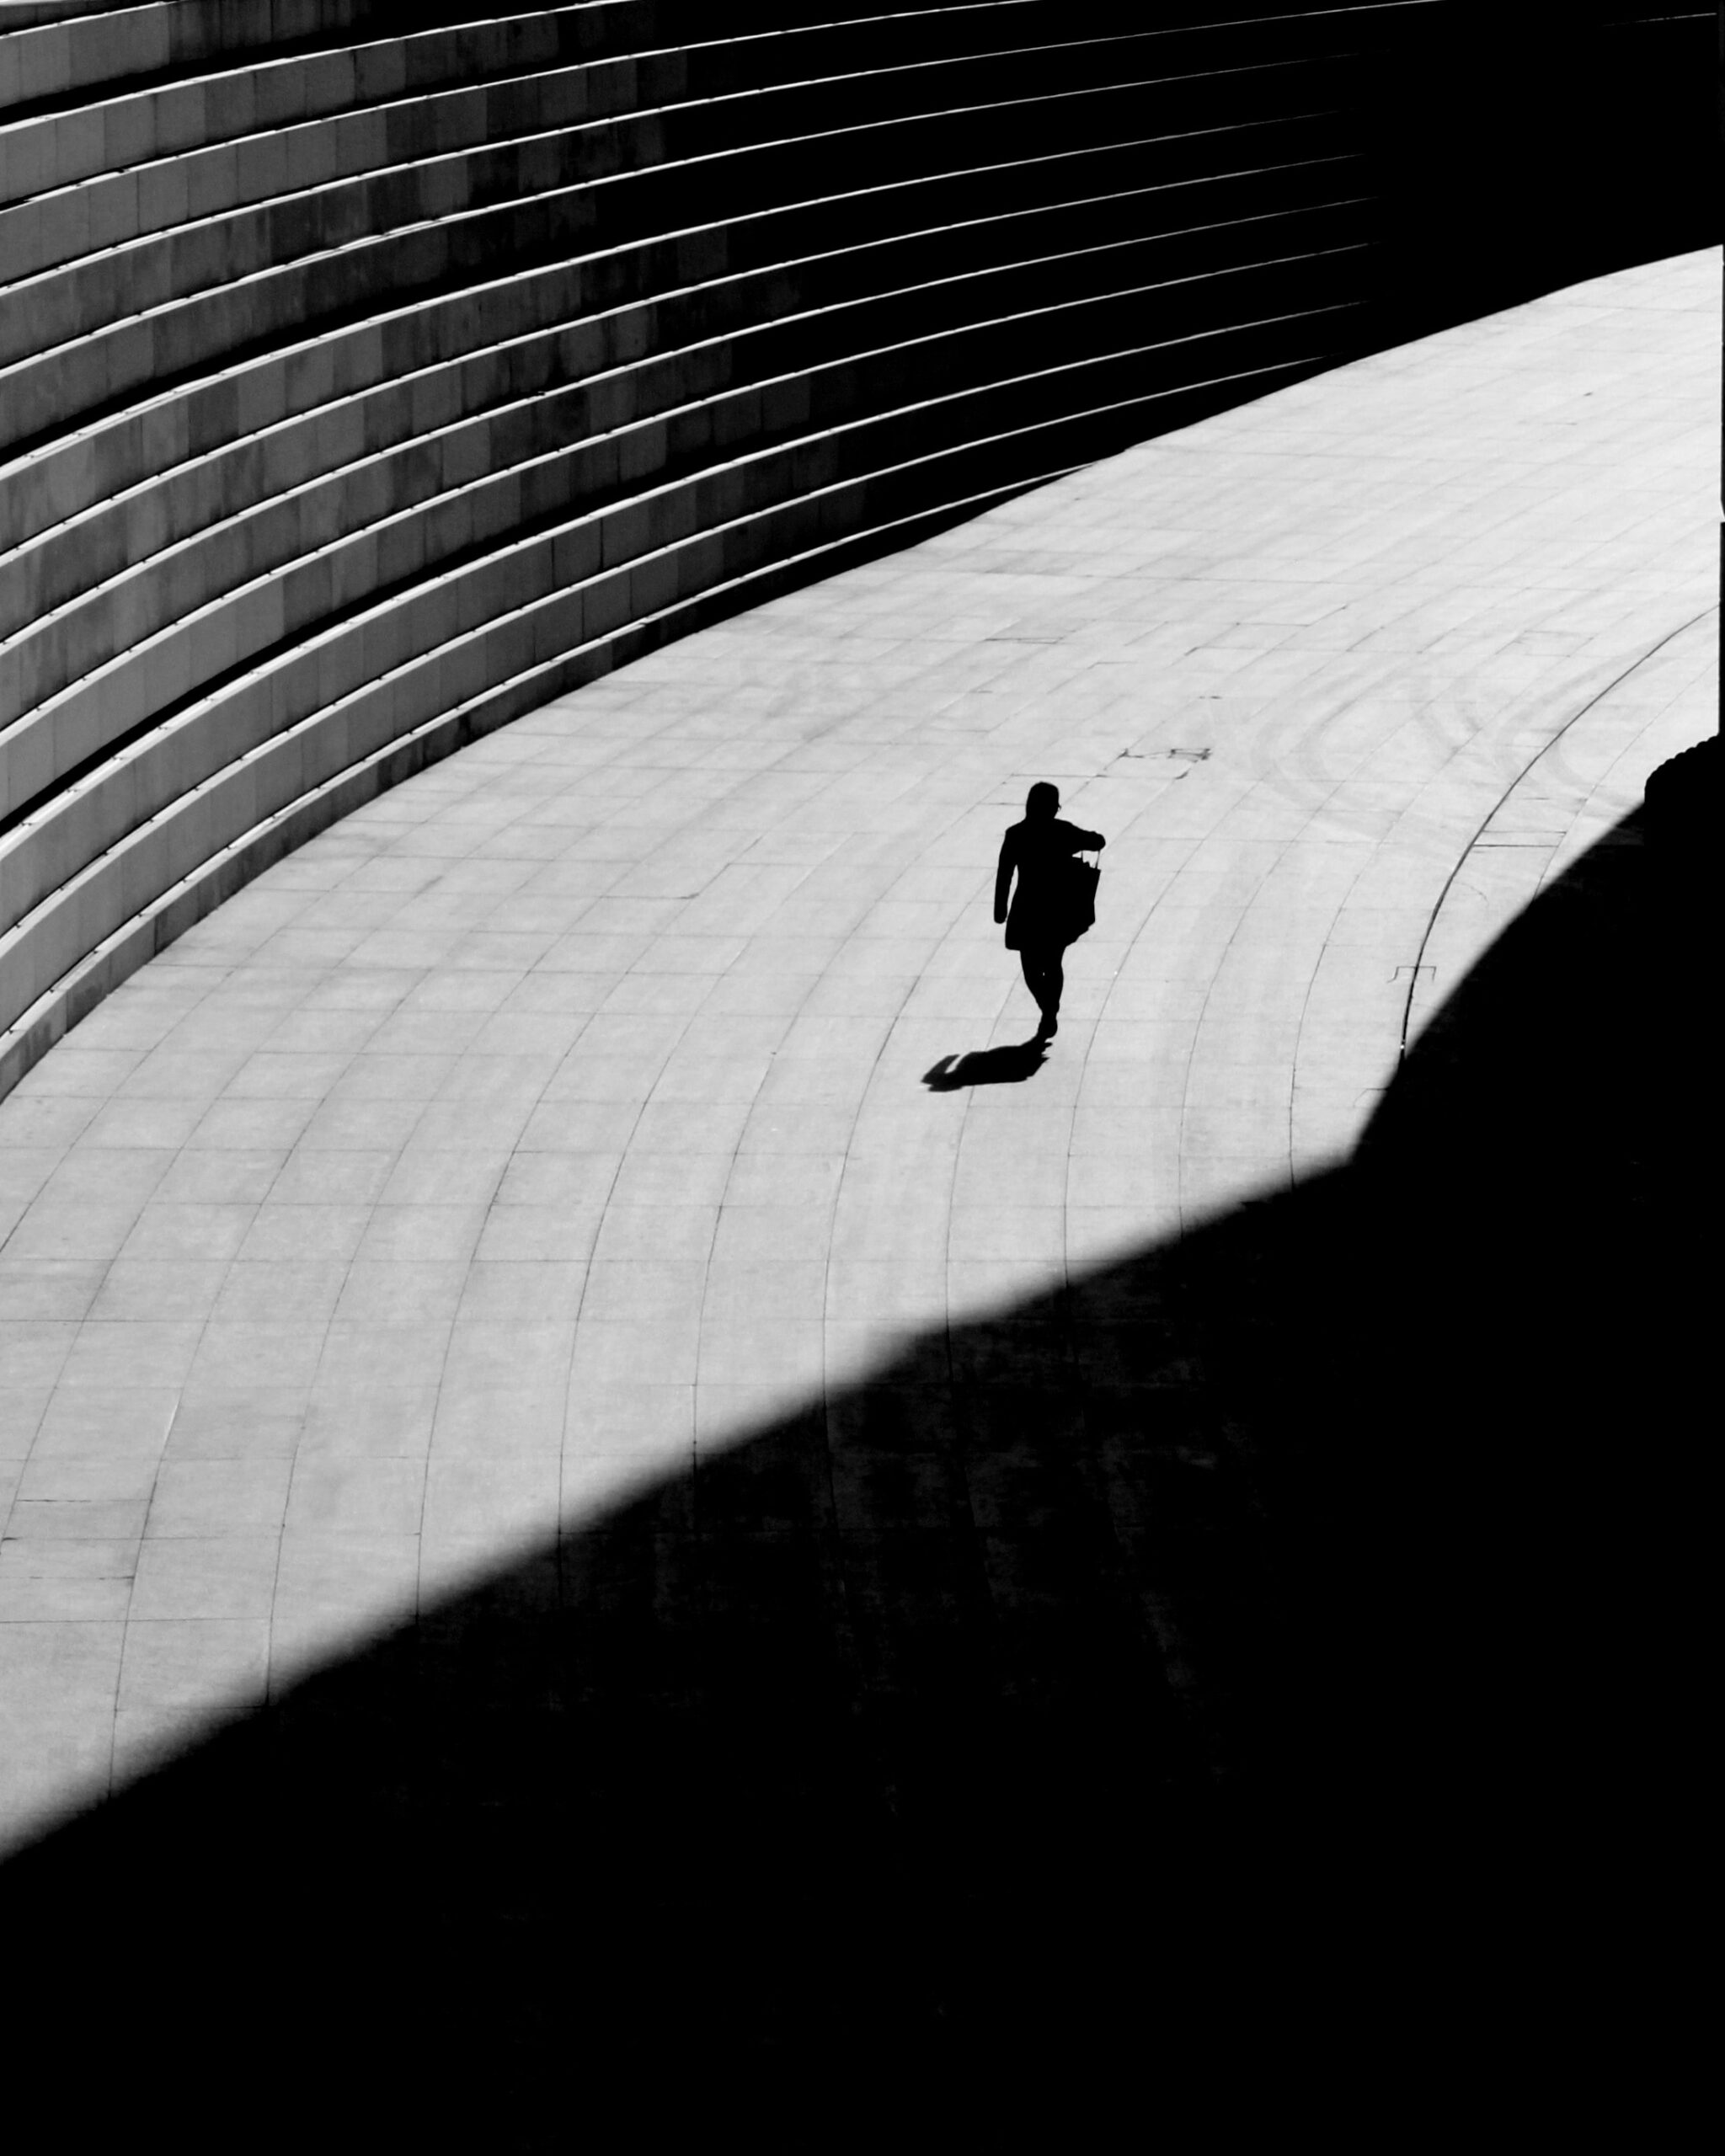 Schatten und Lichtspiel. Frau geht alleine auf Pflaster. Bild in schwarz/weiß. Missbrauchsmuster